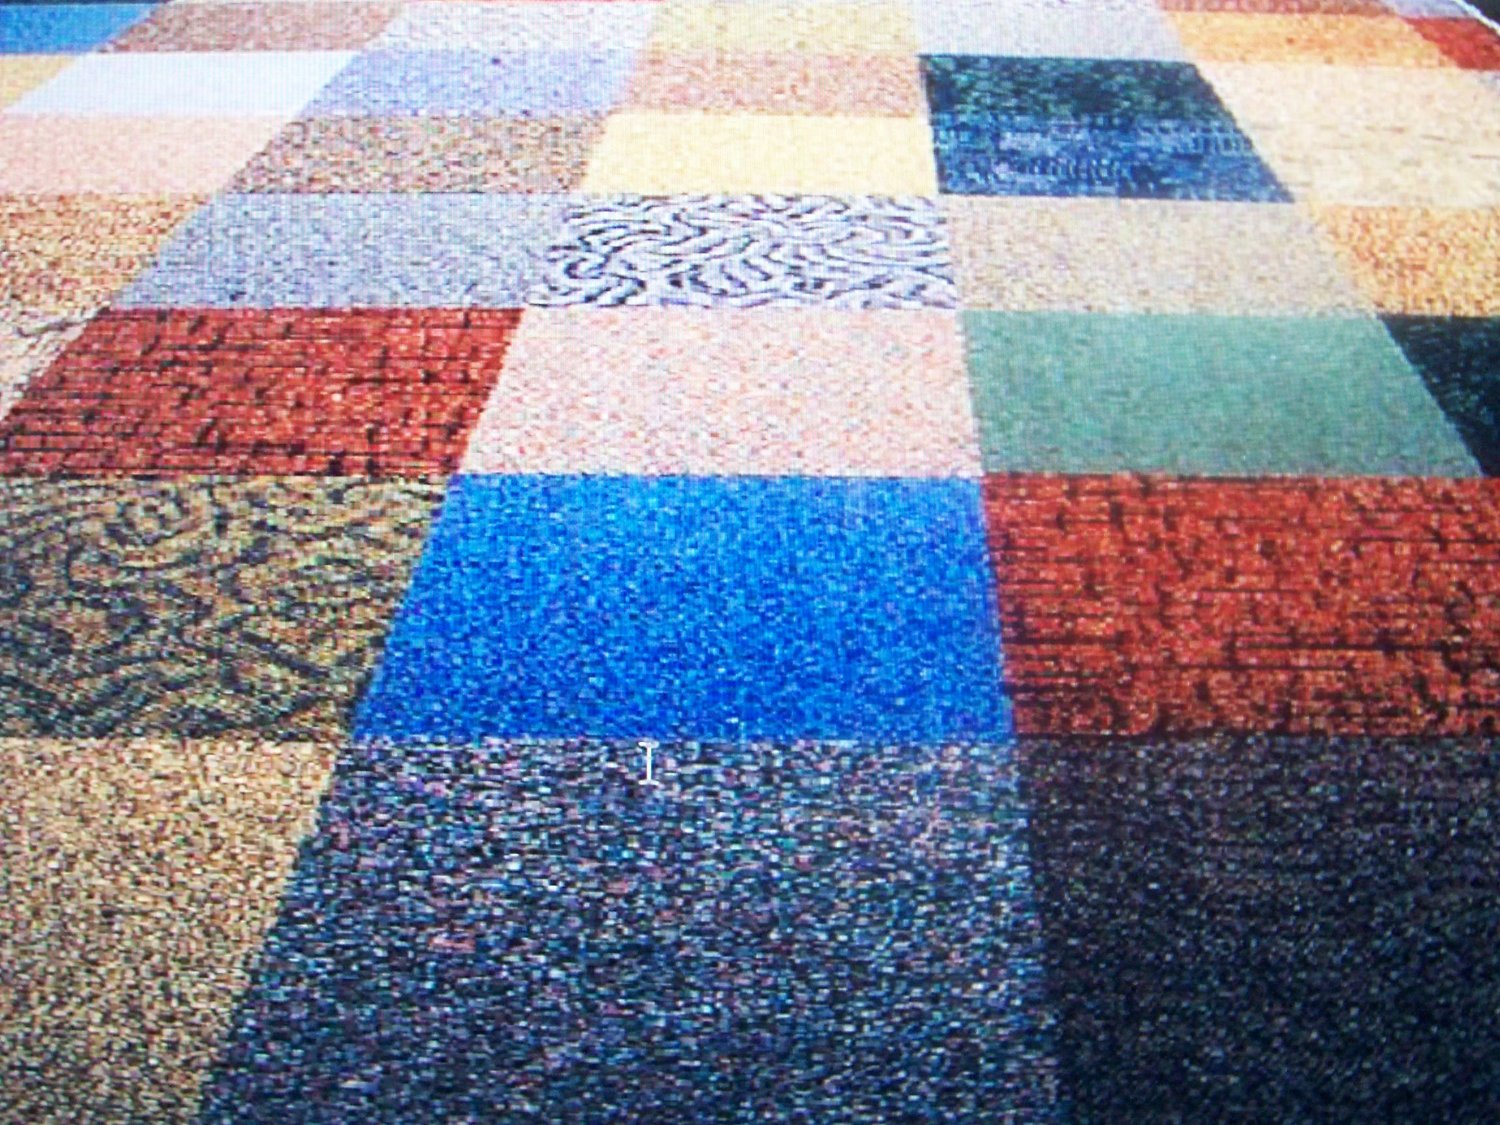 Commercial Carpet Tile - Random Assorted Colors ~ Sure Furniture